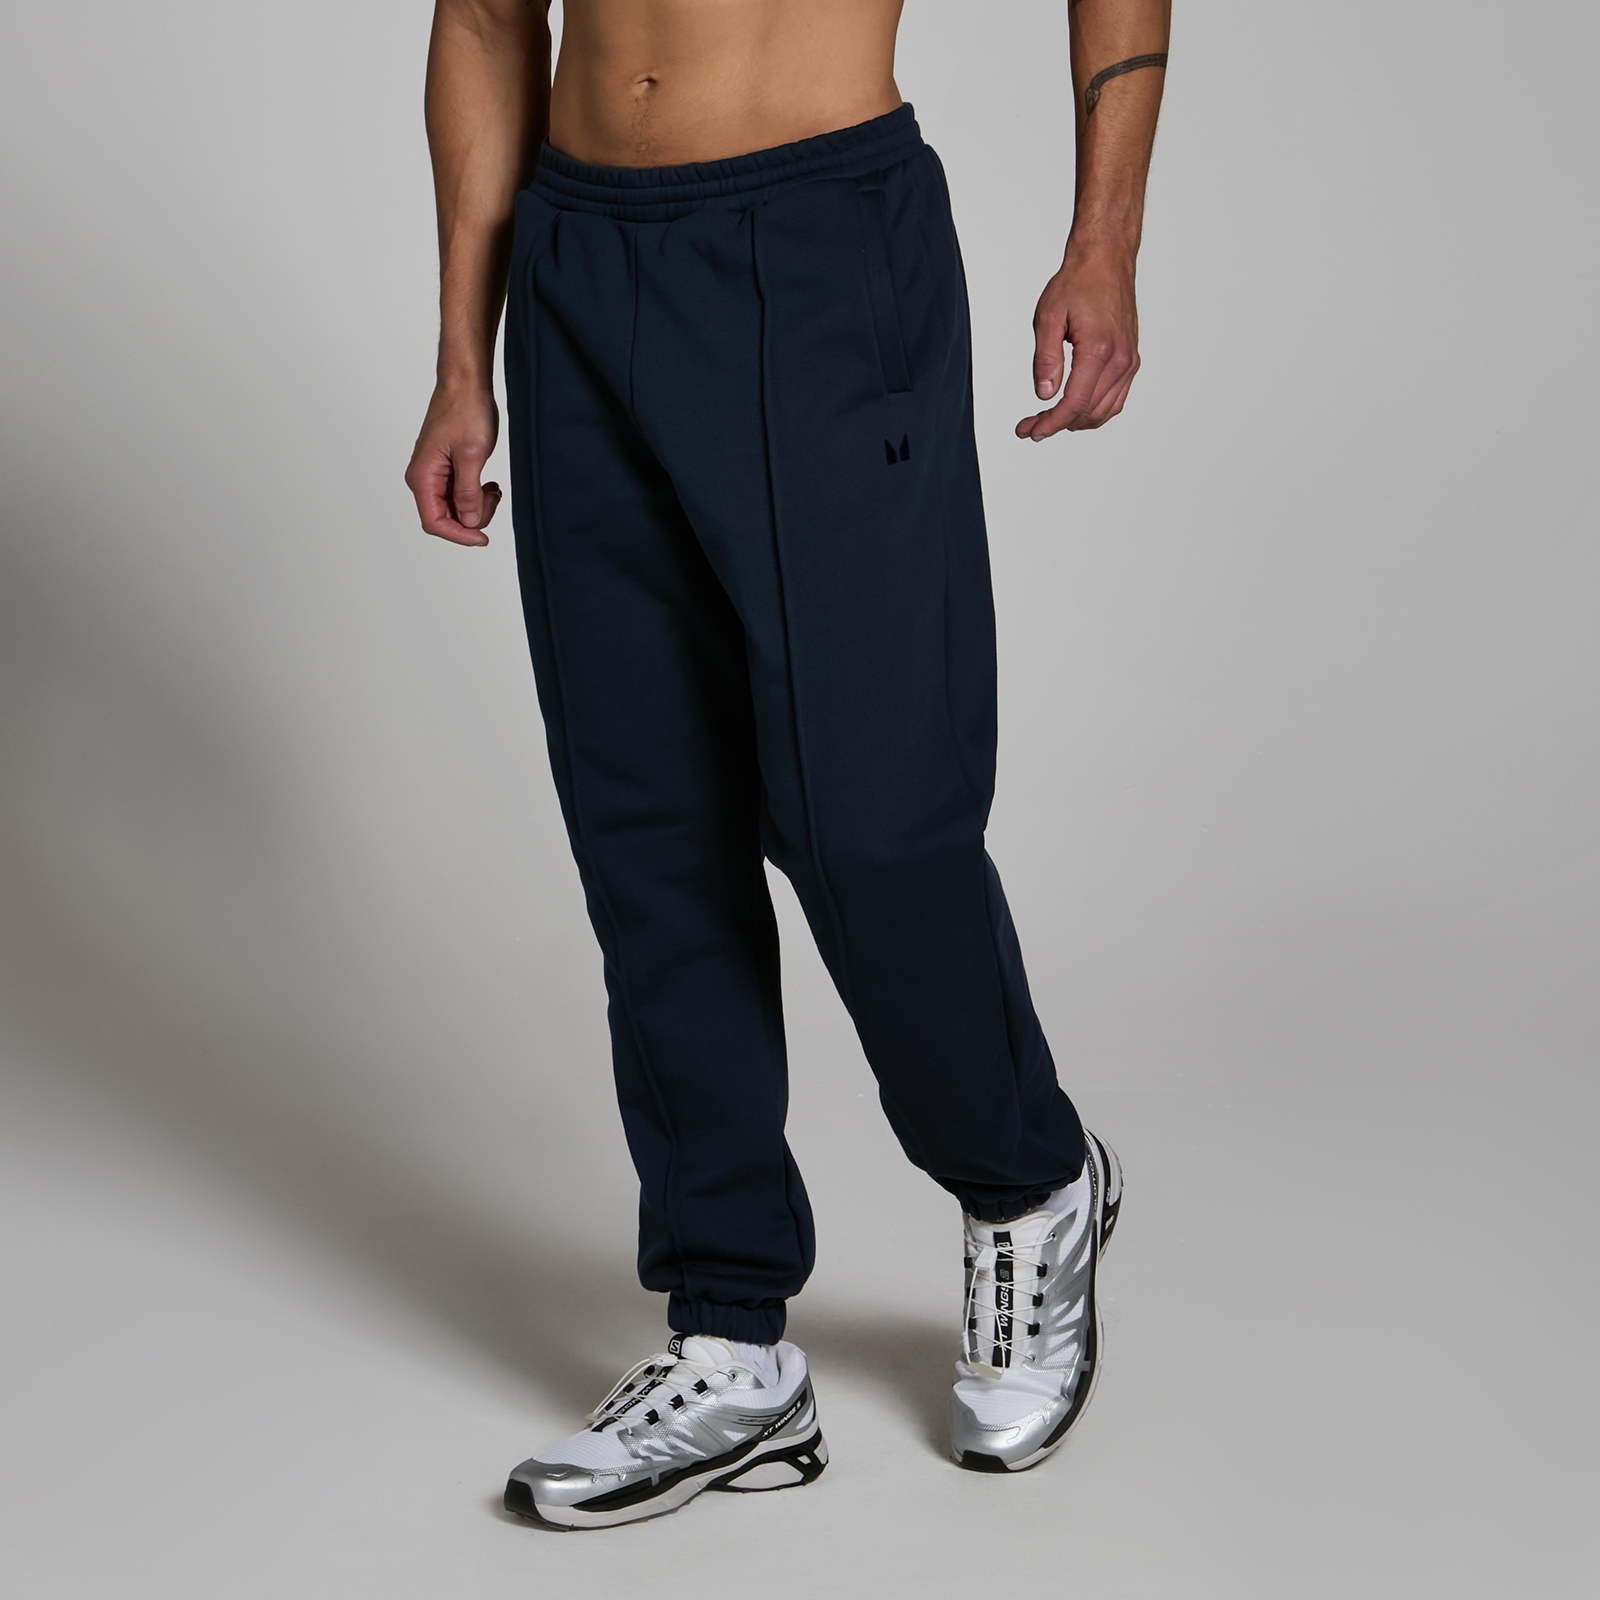 MP muške predimenzionirane sportske hlače za teške uvjete rada Lifestyle - Deep Navy - XS